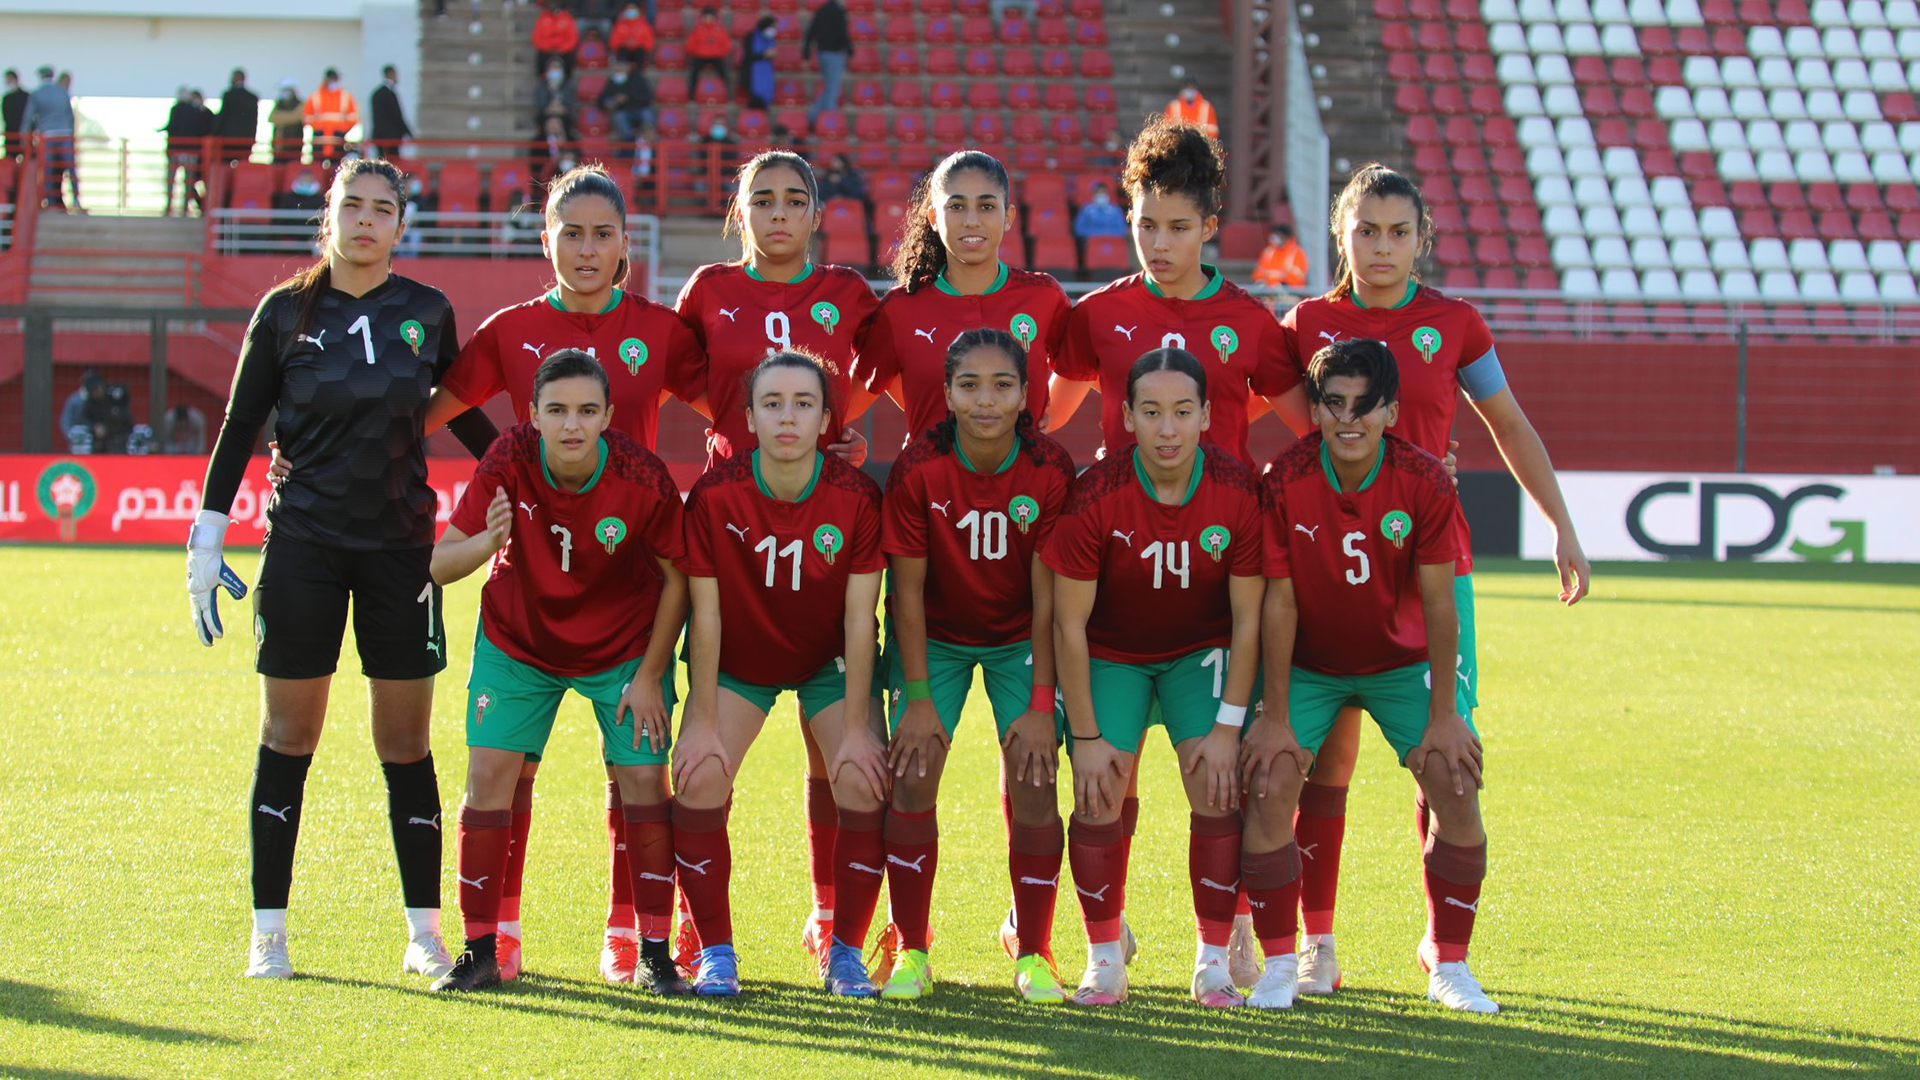 Championnat féminin UNAF U20 : Maroc-Algérie ce mardi après midi